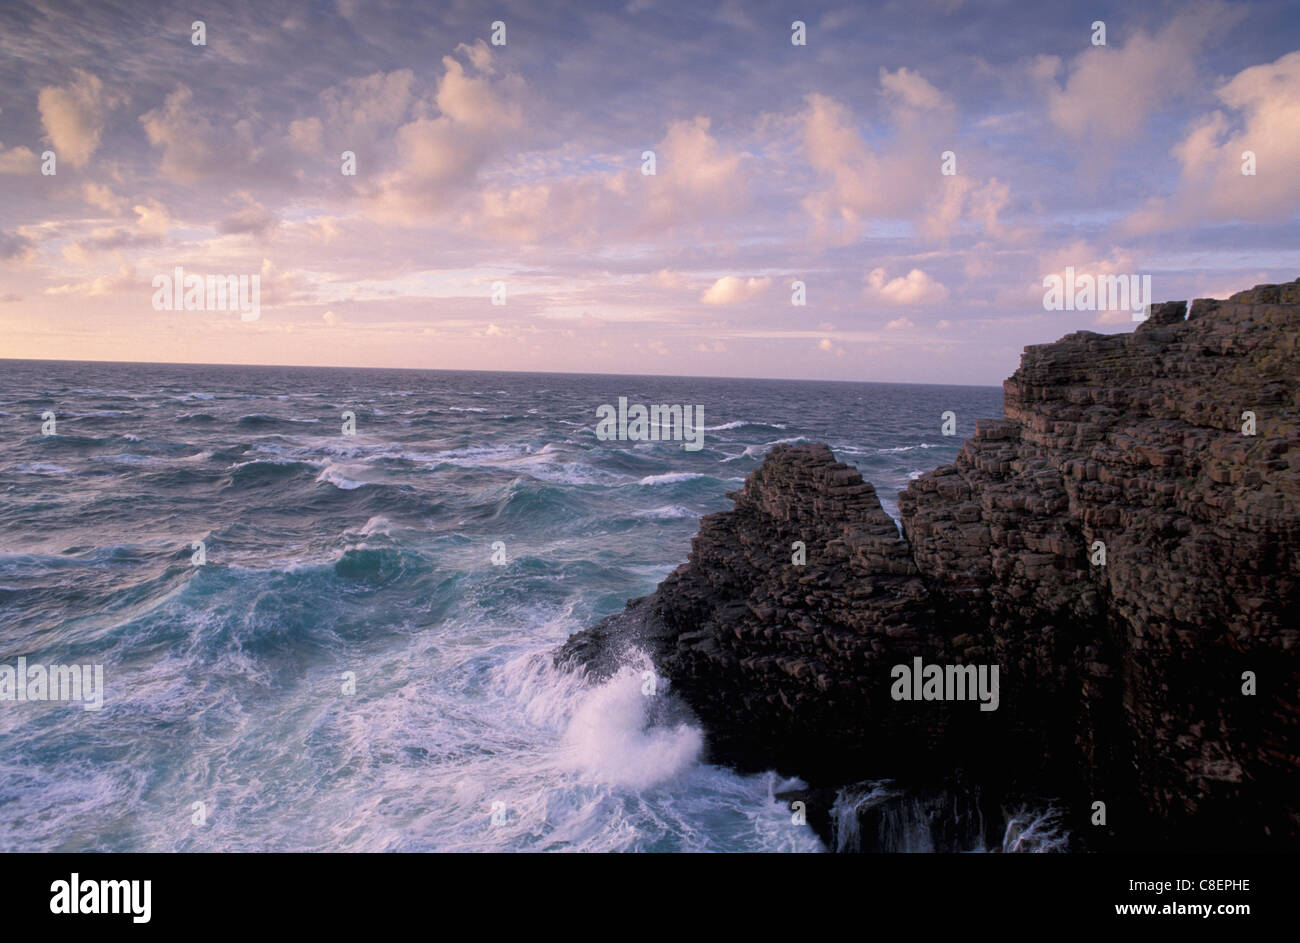 Les falaises, la mer, le Cap Fréhel, Bretagne, France, Europe, des roches, des vagues Banque D'Images